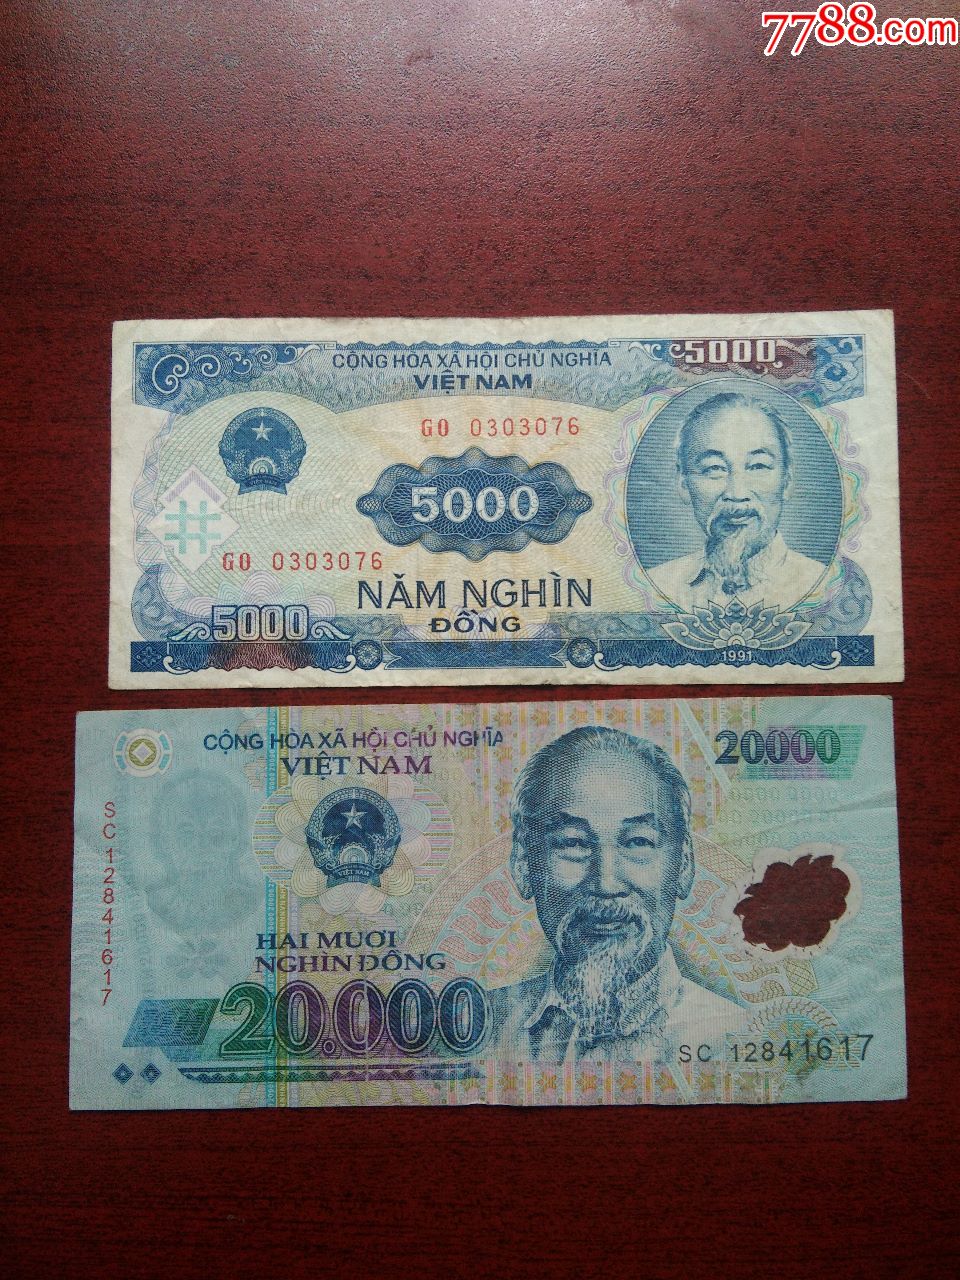 越南币面值25000元